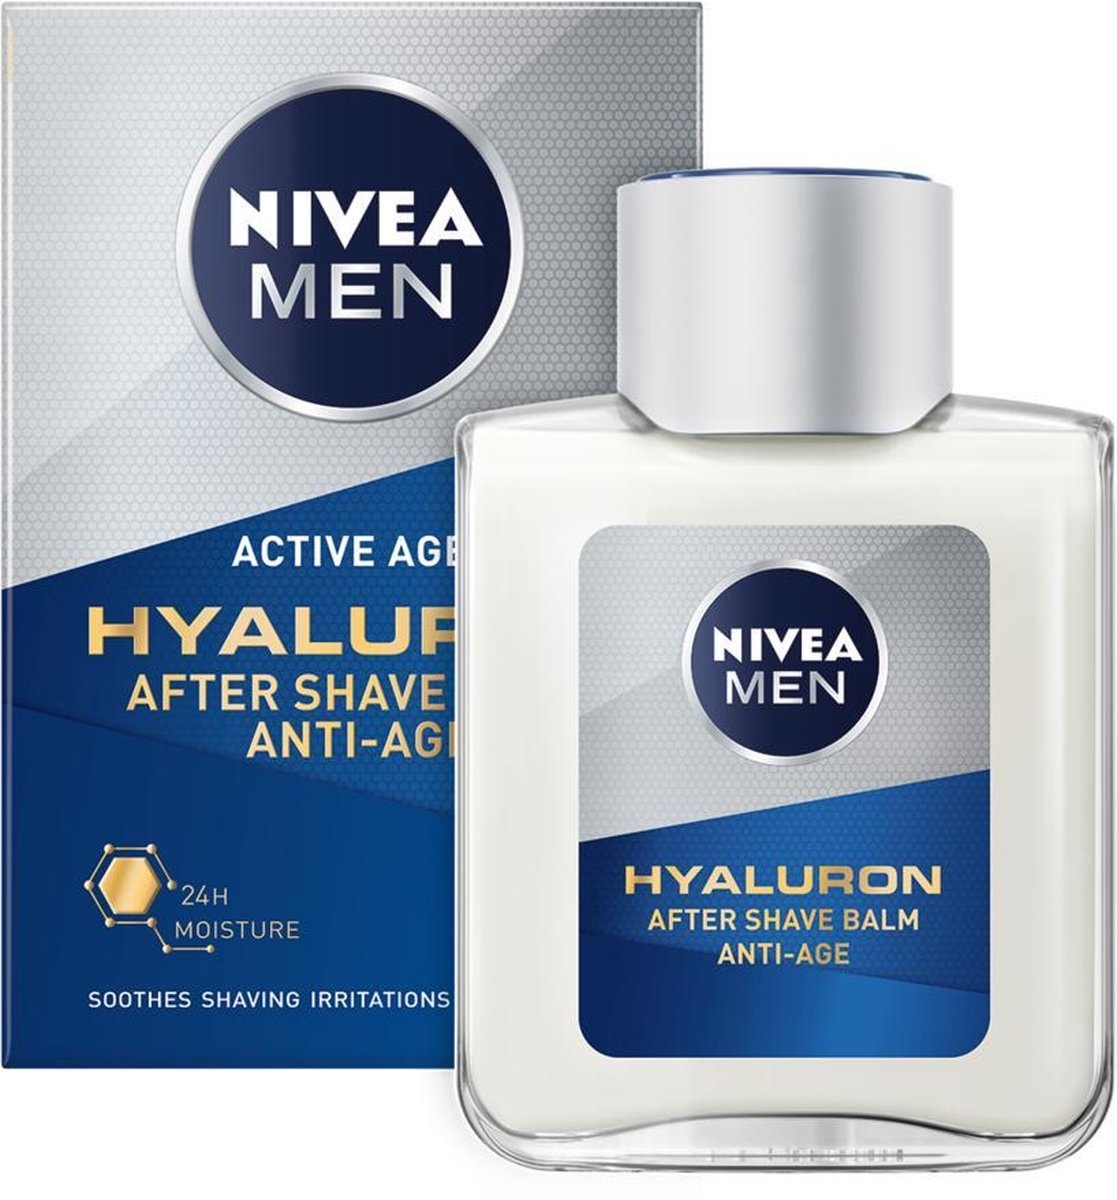 NIVEA MEN Anti-Age Hyaluronsäure After Shave Balsam – 100 ml – Verpackung beschädigt